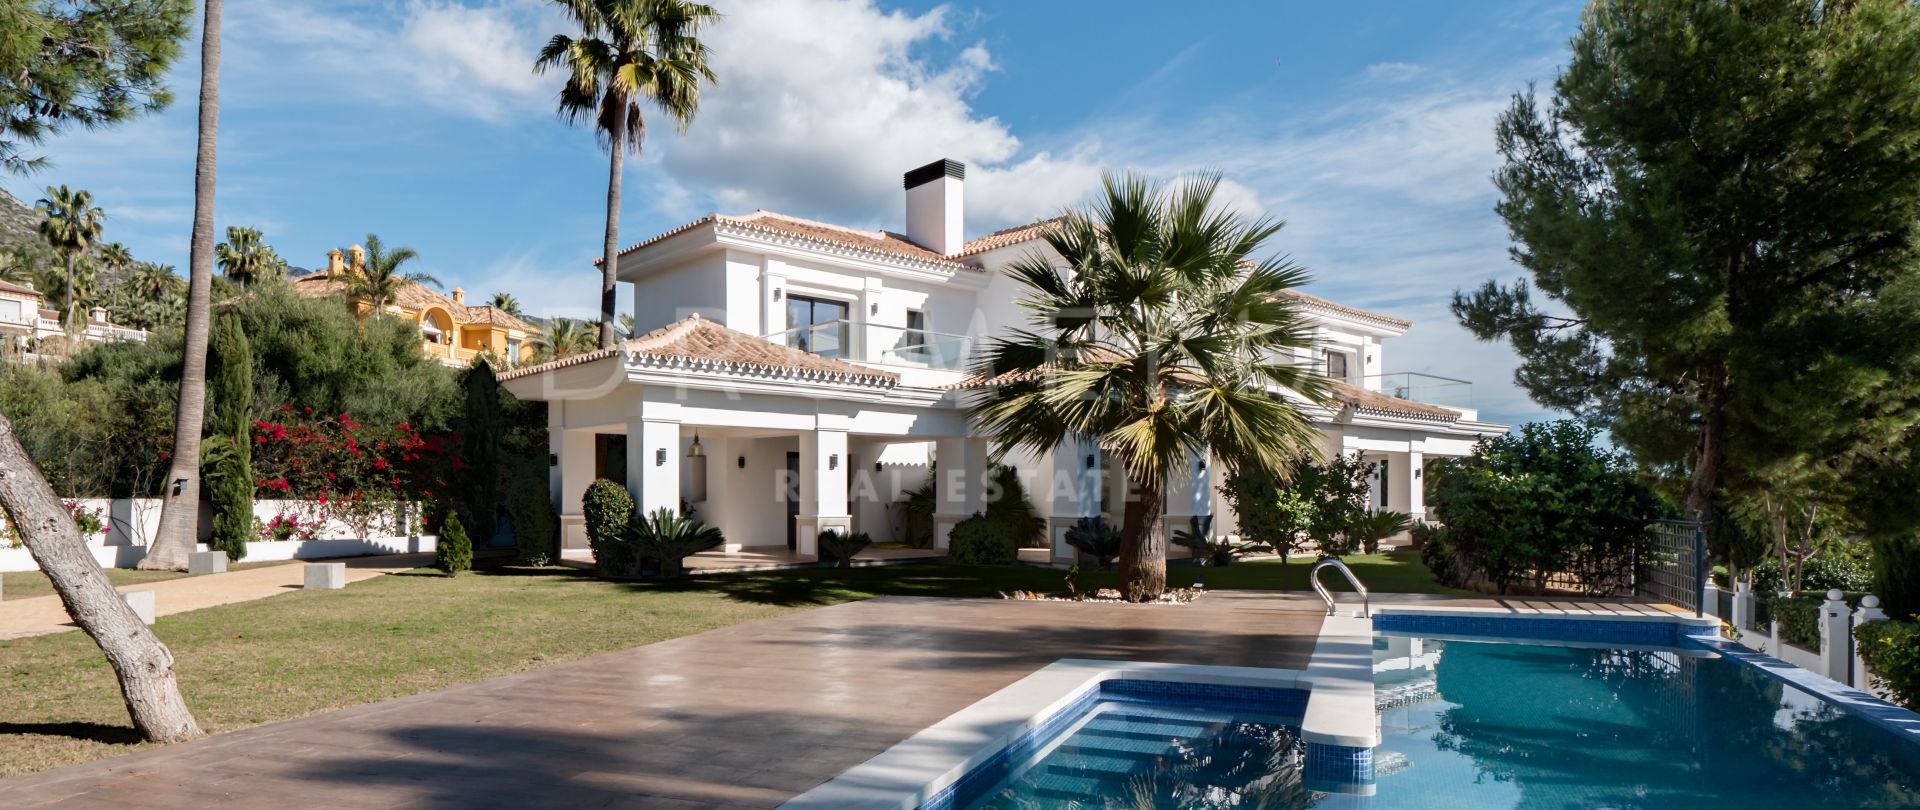 Villa Azure - Nouvelle maison de luxe méditerranéenne moderne à l'allure exquise, Sierra Blanca, Golden Mile de Marbella